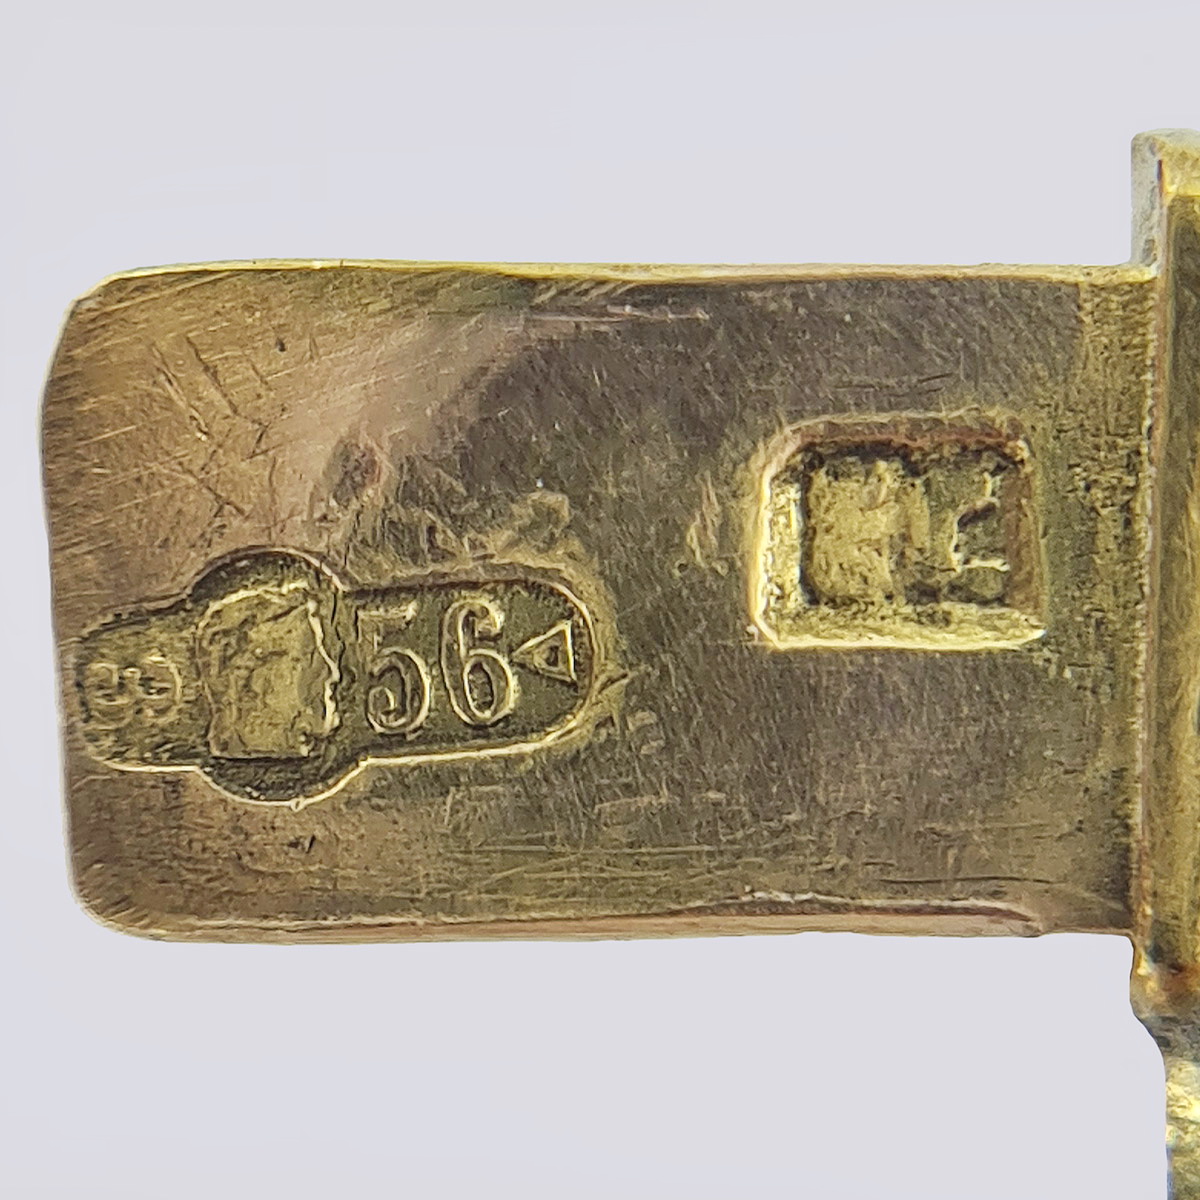 Гибкий браслет из золота 56 пробы конца 19 века